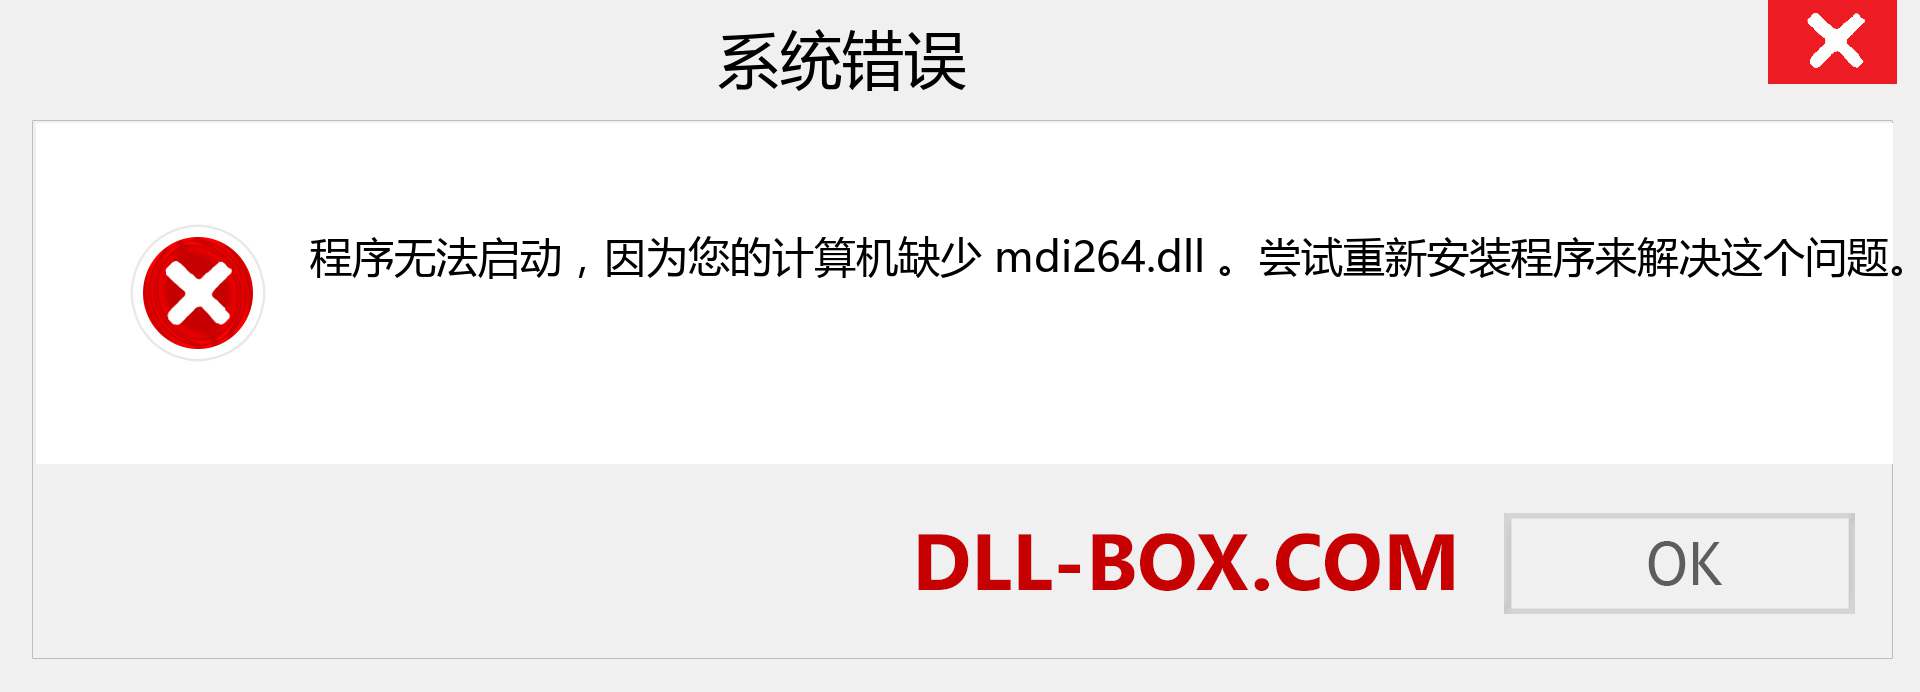 mdi264.dll 文件丢失？。 适用于 Windows 7、8、10 的下载 - 修复 Windows、照片、图像上的 mdi264 dll 丢失错误